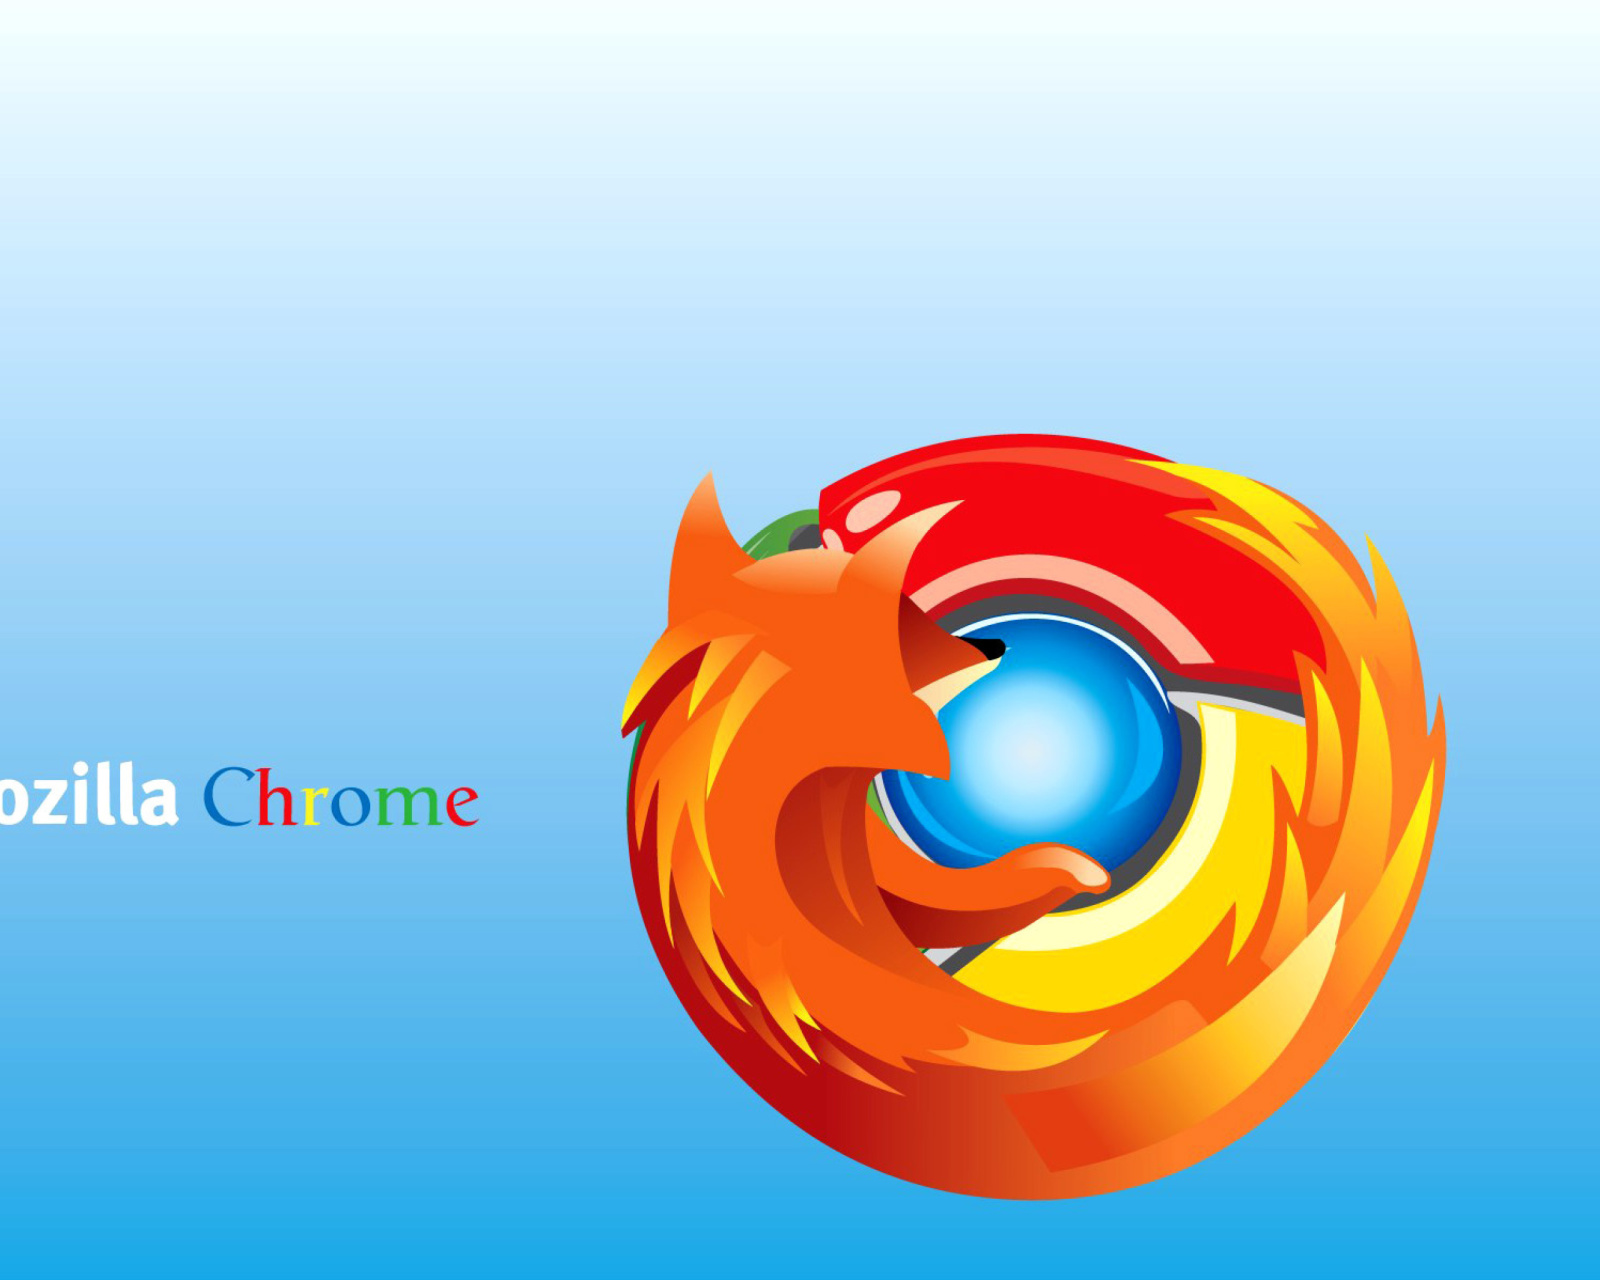 Mozilla Chrome wallpaper 1600x1280